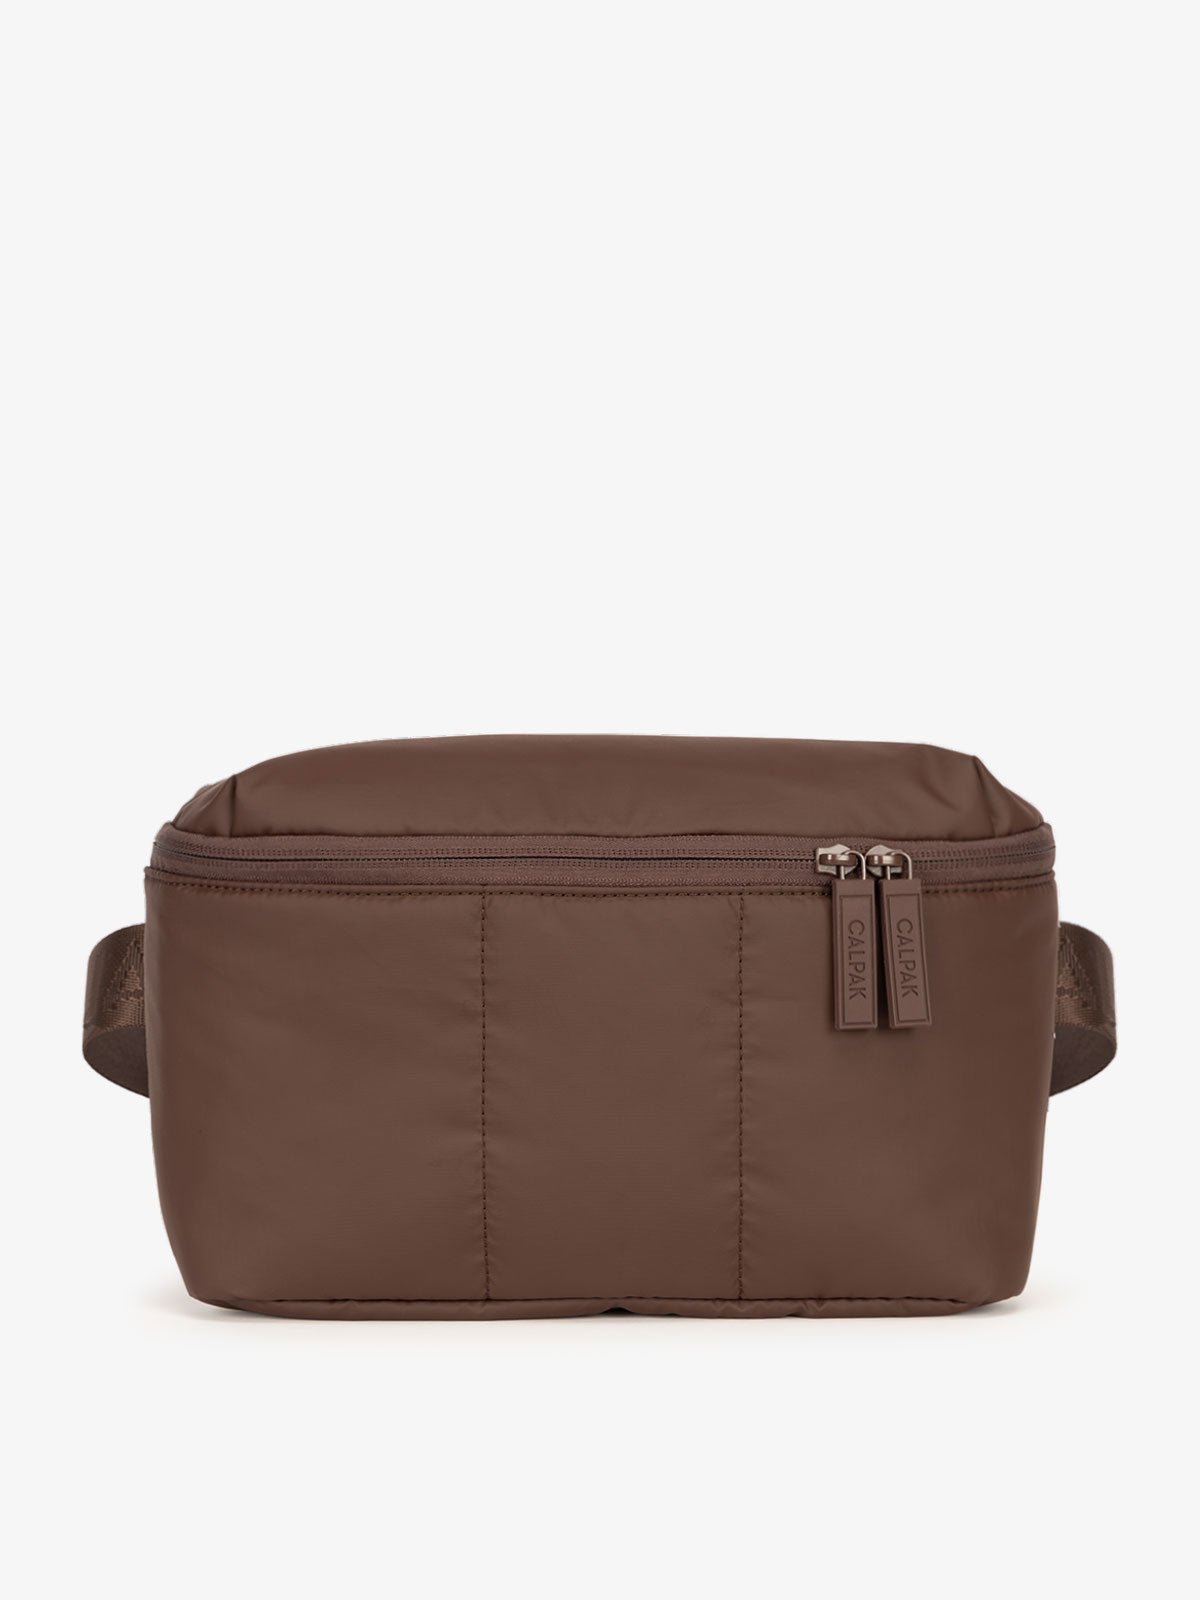 CALPAK Luka Belt Bag with soft puffy exterior in dark brown walnut